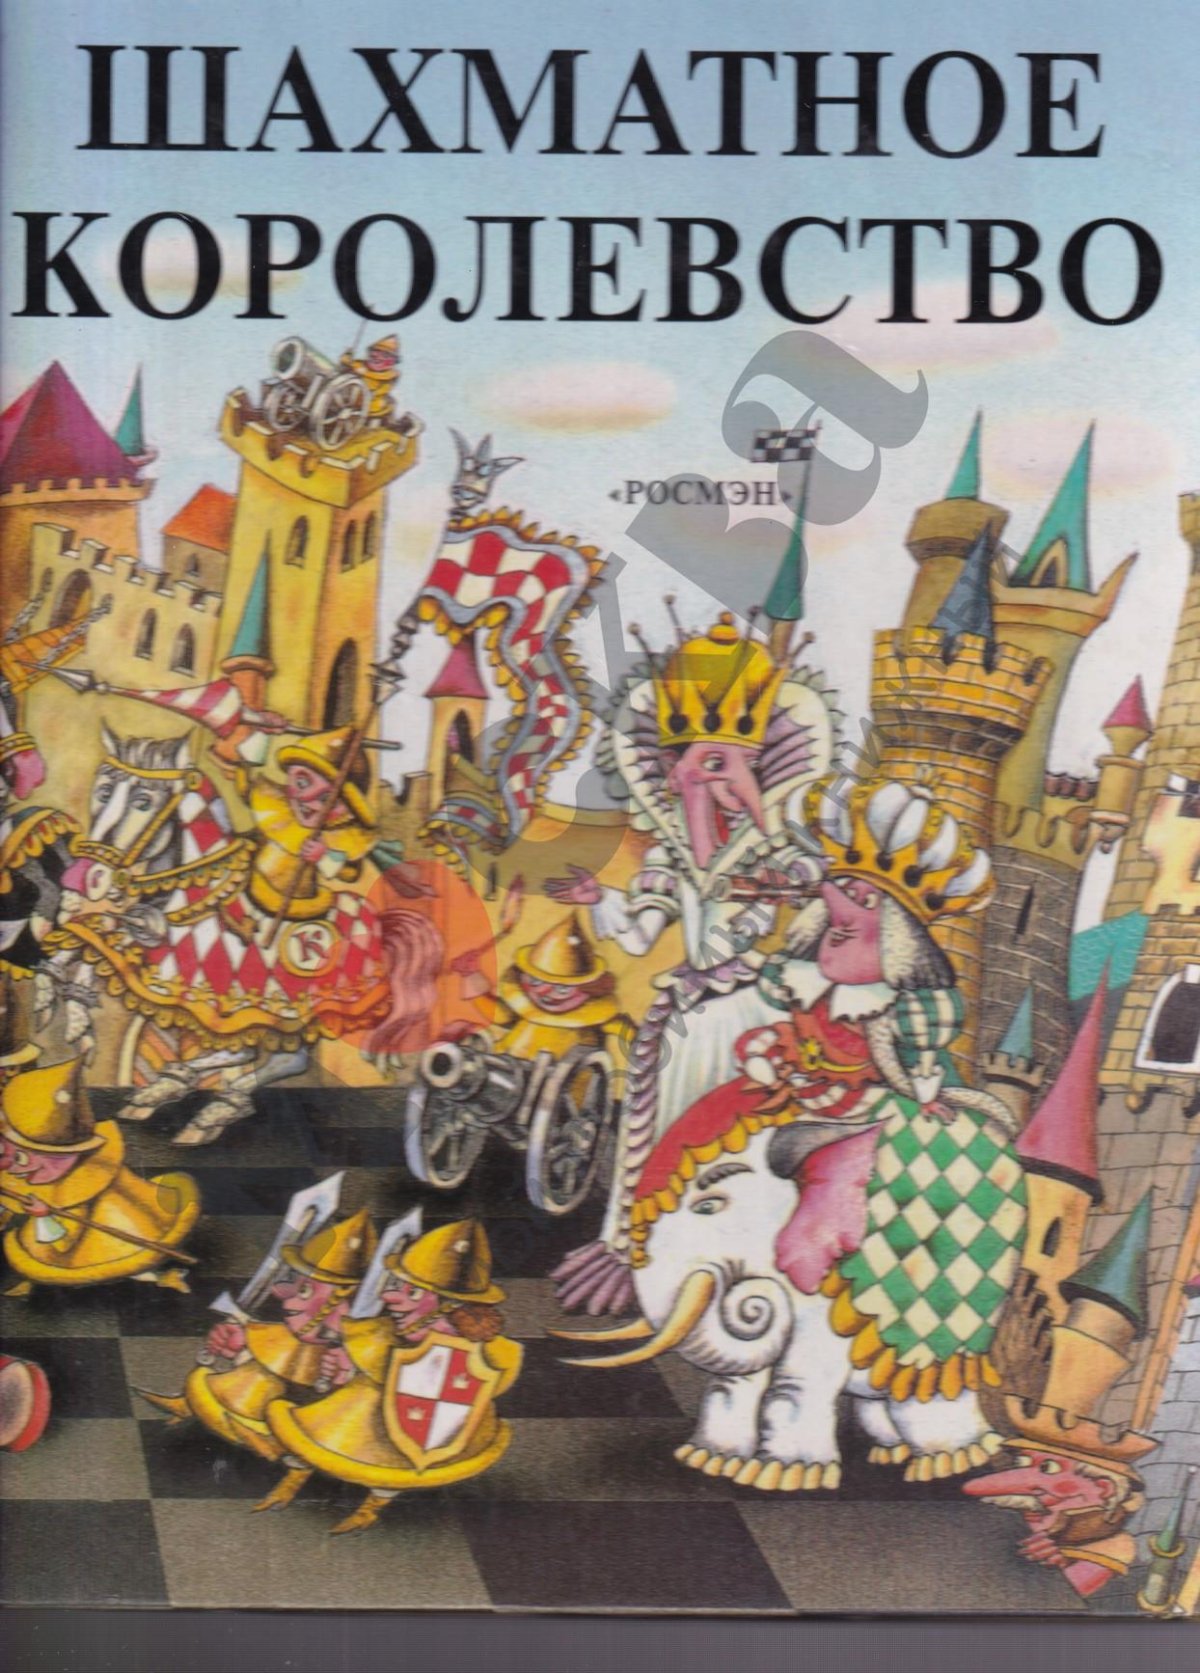 Шахматное королевство книга для детей